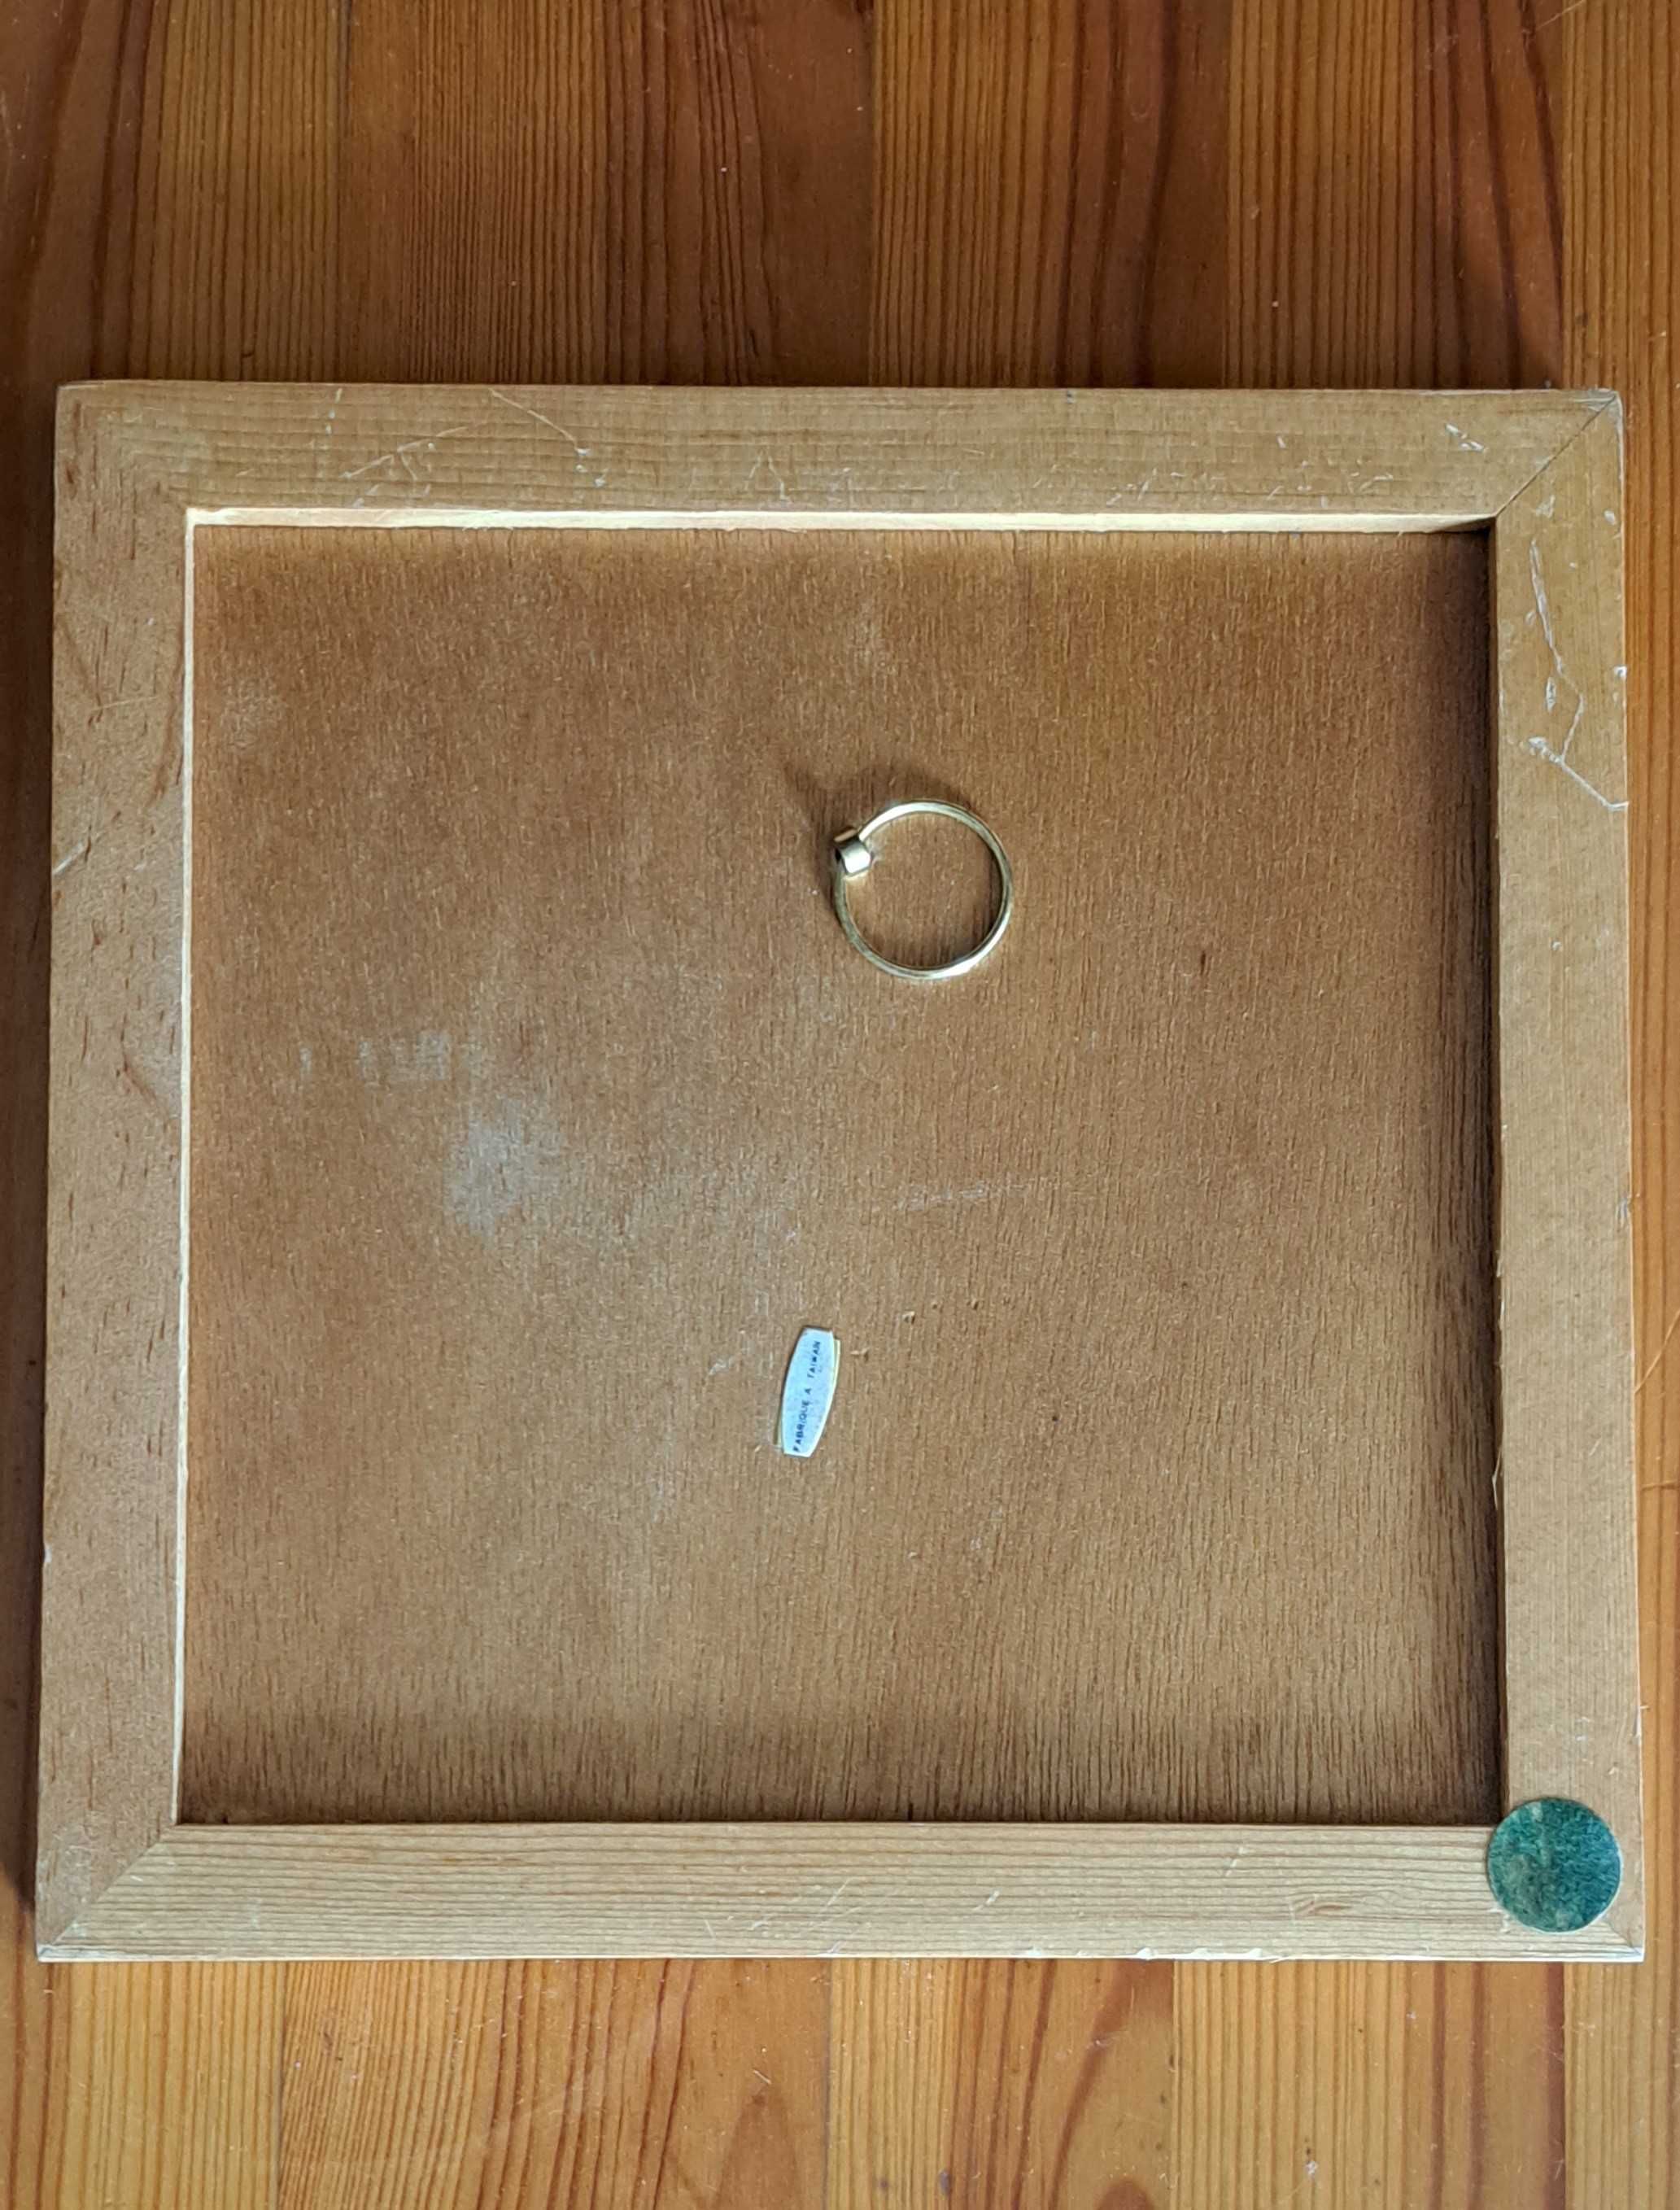 ceramiczna płytka oprawiona w drewnianą ramkę